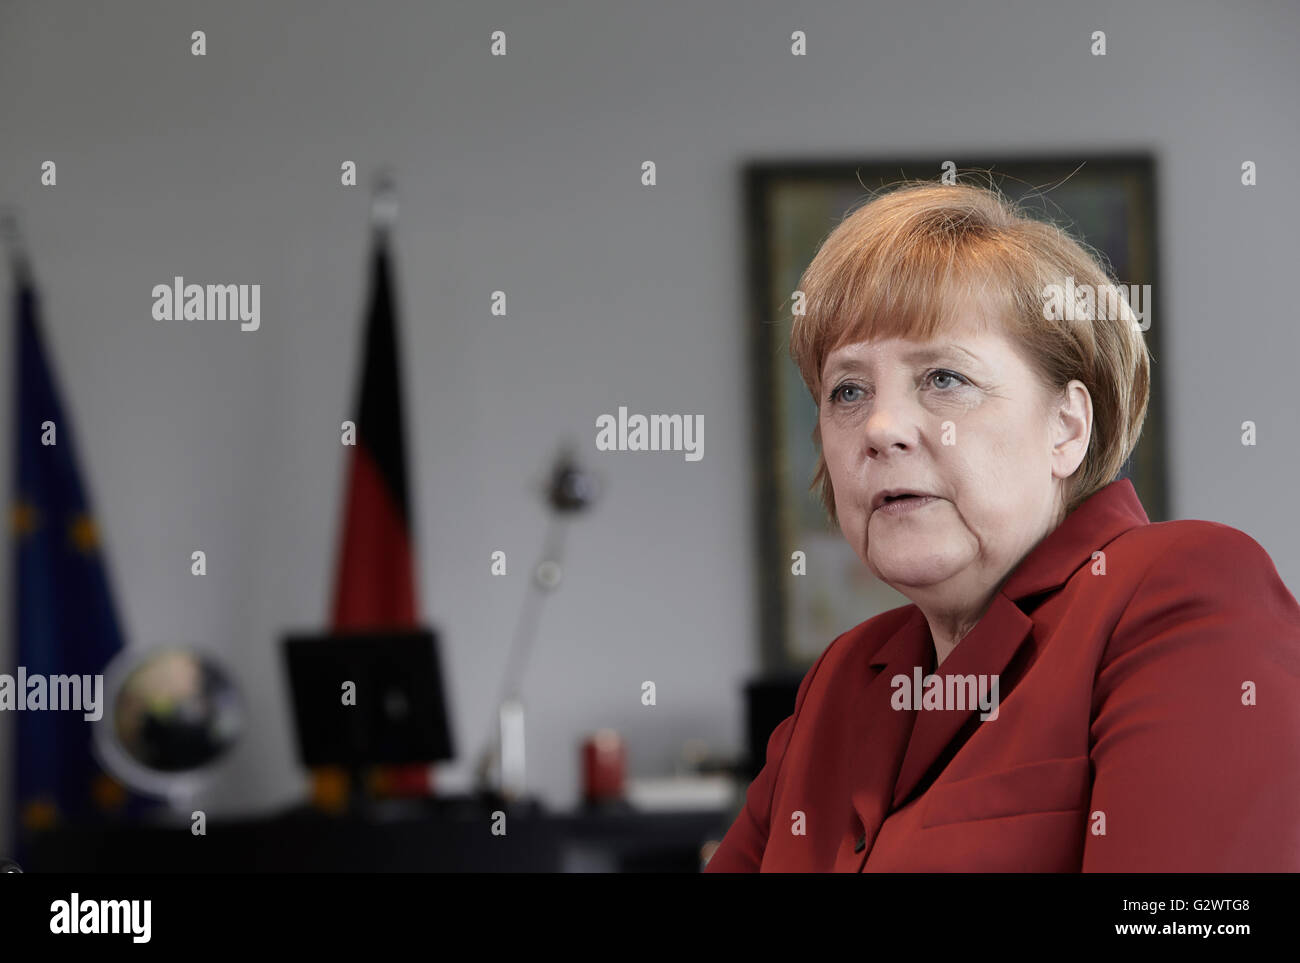 27.05.2013, Berlin, Berlin, Germania - Cancelliere Angela Merkel (CDU) gesti durante un colloquio presso la cancelleria federale a Berlino. 0PA130527D018CAROEX.JPG - non per la vendita in G E R M A N Y, A U S T R I A, S W I T Z e R L A N D [modello di rilascio: NO, la proprietà di rilascio: NO, (c) caro agenzia fotografica / Ponizak, http://www.caro-images.com, info@carofoto.pl - Qualsiasi uso di questa immagine è soggetto a royalty!] Foto Stock